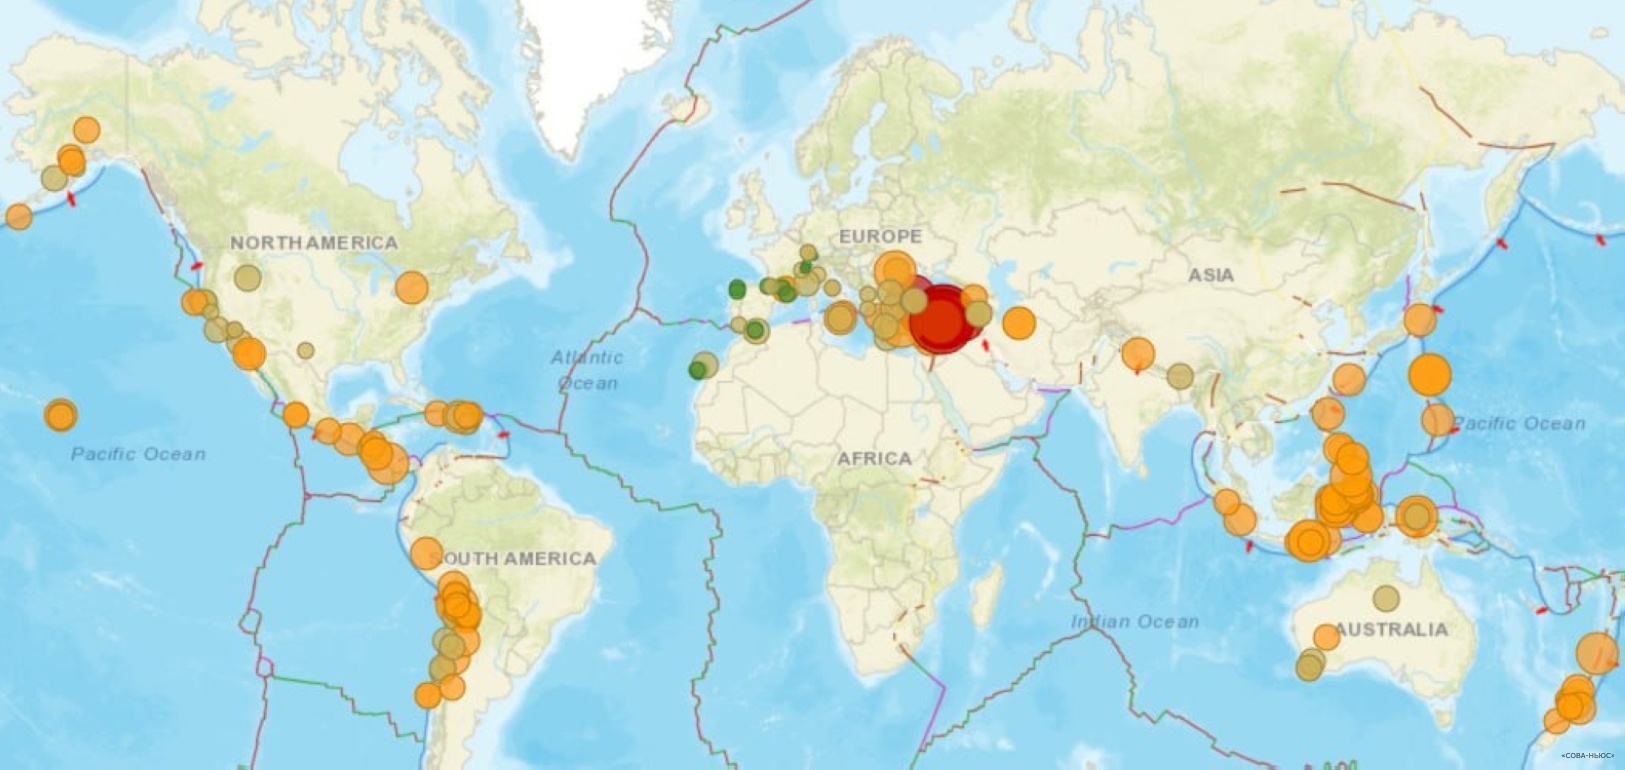 Турецкое землетрясение докатилось до Армении, Грузии, Румынии и многих других стран